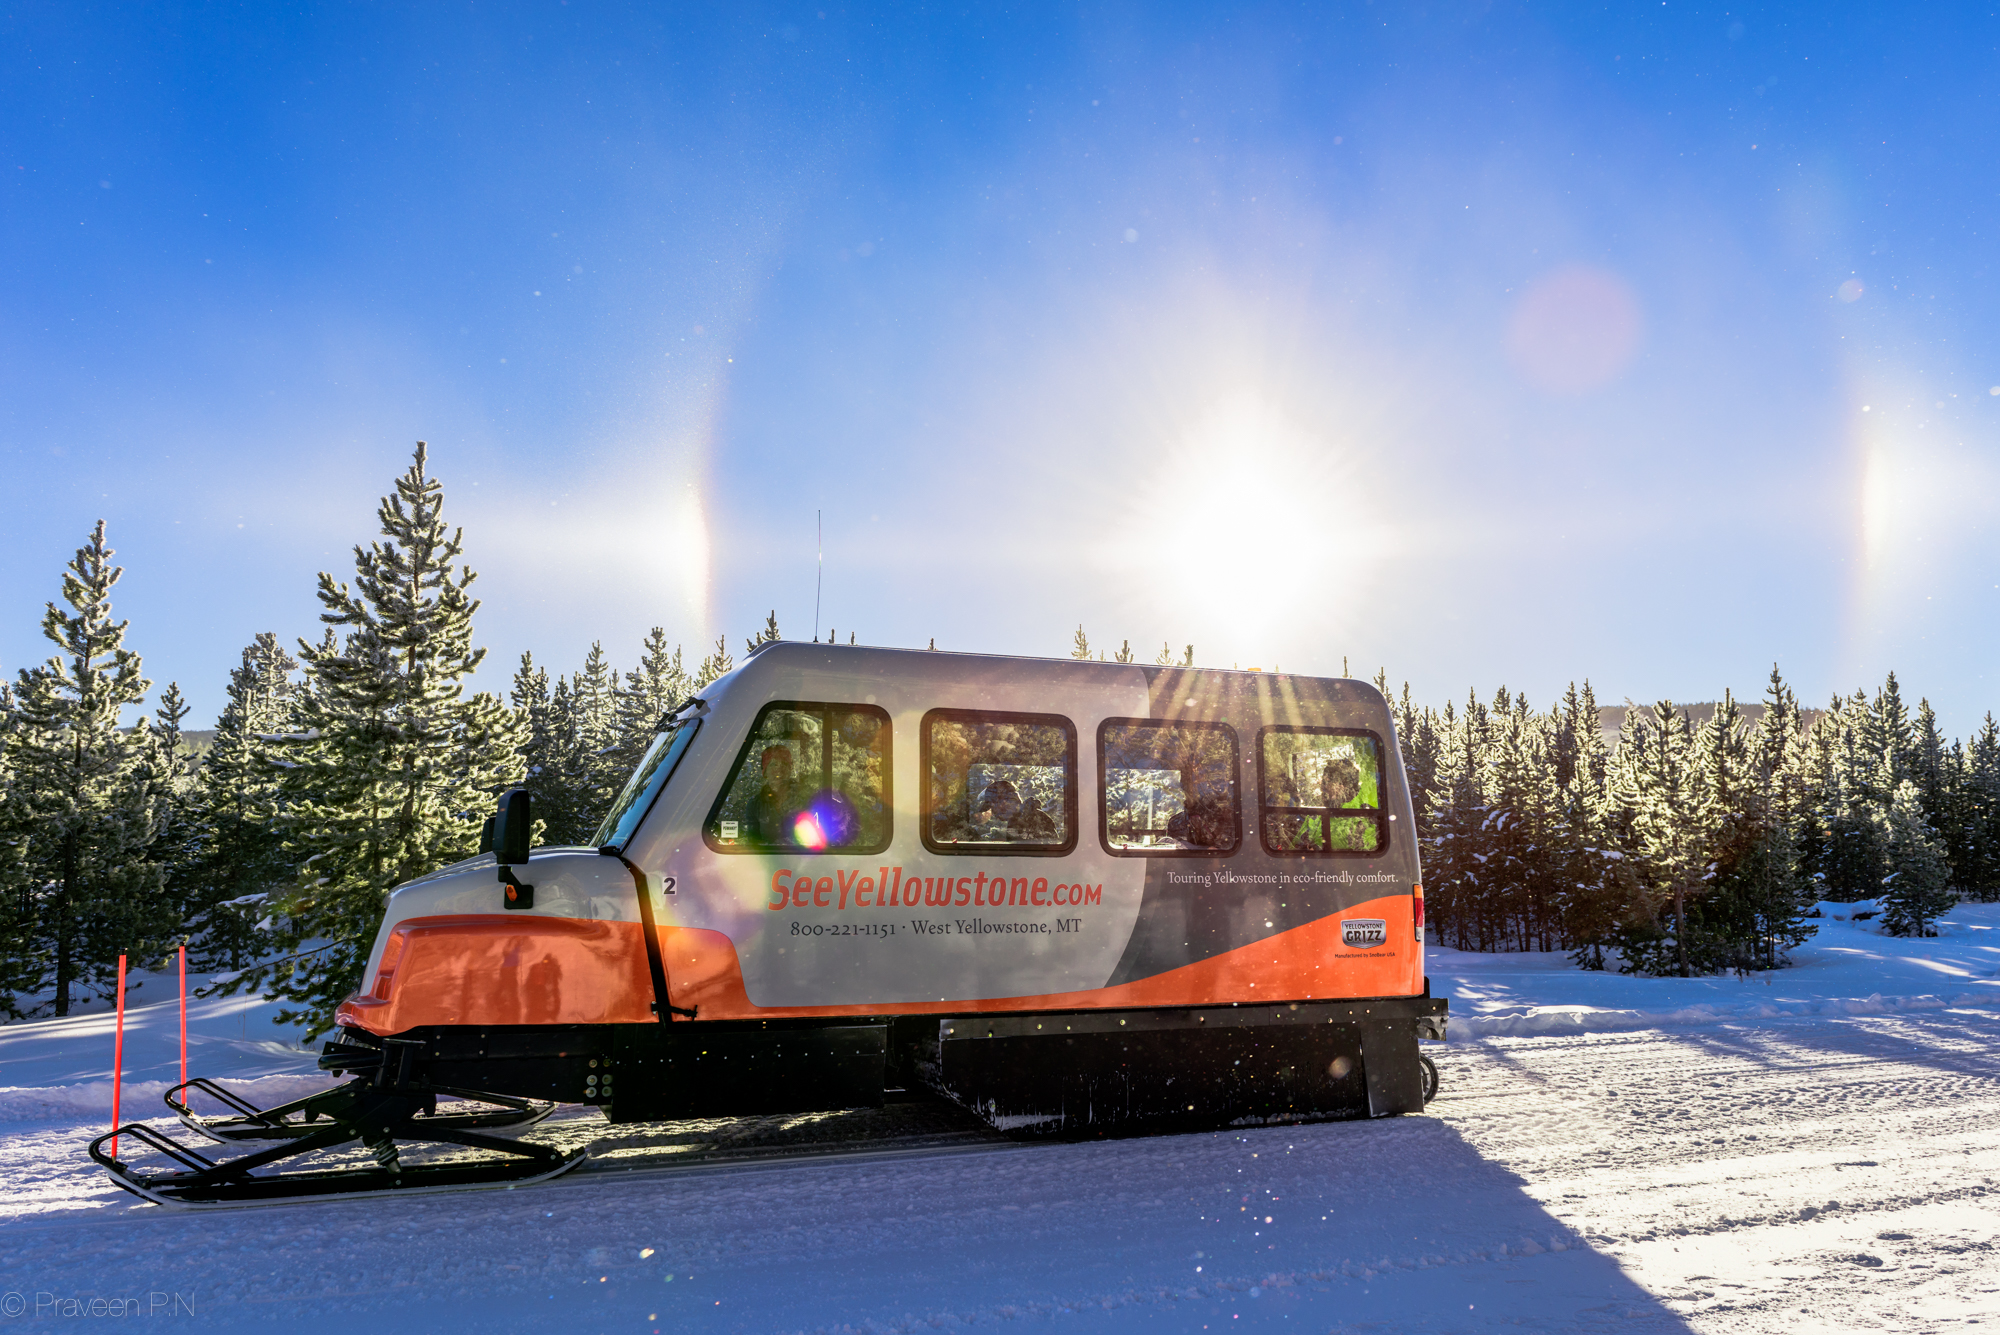 Sun dogs and Diamond dust around a snowcoach